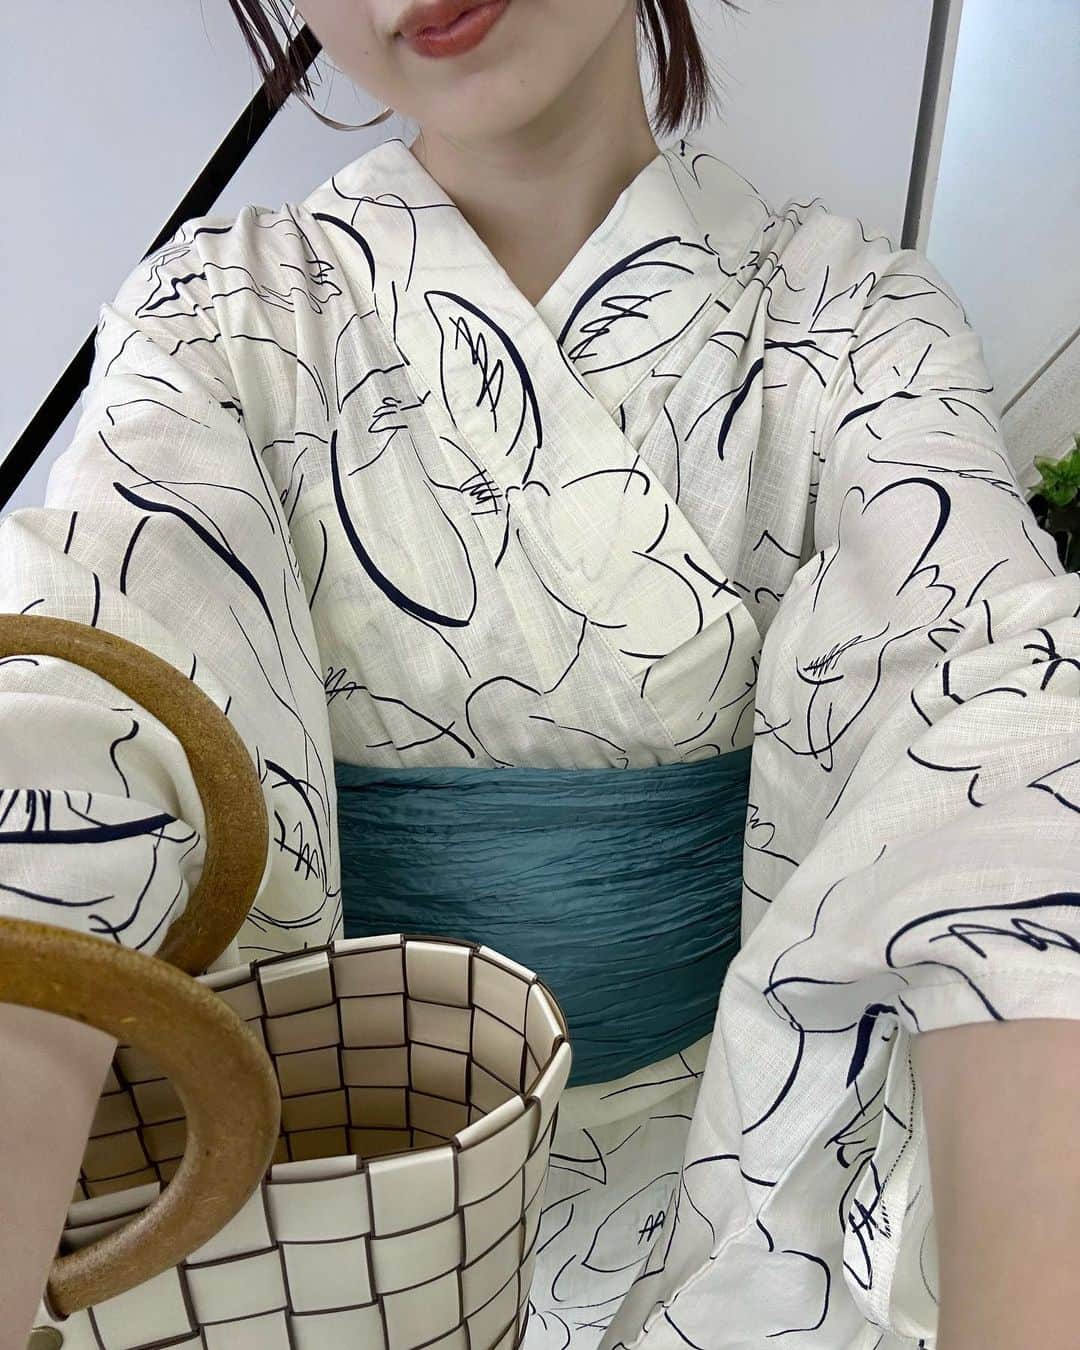 miho uesugiのインスタグラム：「Kastaneから、久方ぶりの浴衣が…！！出ます…！！ 私はこちらの柄を購入予定です☺️ 嬉しすぎる。。 ㅤㅤㅤㅤㅤㅤㅤㅤ ㅤㅤㅤㅤㅤㅤㅤㅤㅤㅤ  歴代の浴衣、持ってる方いらっしゃいますか？⭐️ （私は全部持ってます）  ㅤㅤㅤㅤㅤㅤㅤㅤㅤㅤㅤㅤㅤ 今月末、店長みんなで浴衣で納涼船に乗る予定が楽しみ！！！ ㅤㅤㅤㅤㅤㅤㅤㅤㅤㅤㅤㅤㅤ  久々に自分で着付けして、なぜか10分くらいで出来たけど下手でした…そして兵児帯の結び方も勉強します🔥  ㅤㅤㅤㅤㅤㅤㅤㅤㅤㅤㅤㅤㅤ  #浴衣#浴衣女子#Kastane_yukata #Kastane#Kastane舞浜#Kastane_ootd#骨格ウェーブ#イエベ春#コーディネート#今日のコーデ#コーデ#大人カジュアル#カジュアル#ロングヘア#オン眉#ぱっつん前髪#30代ファッション#30代コーデ#カスタネ#低身長#低身長コーデ#夏#夏祭り#花火大会#カゴバッグ#かごバッグ#休日」